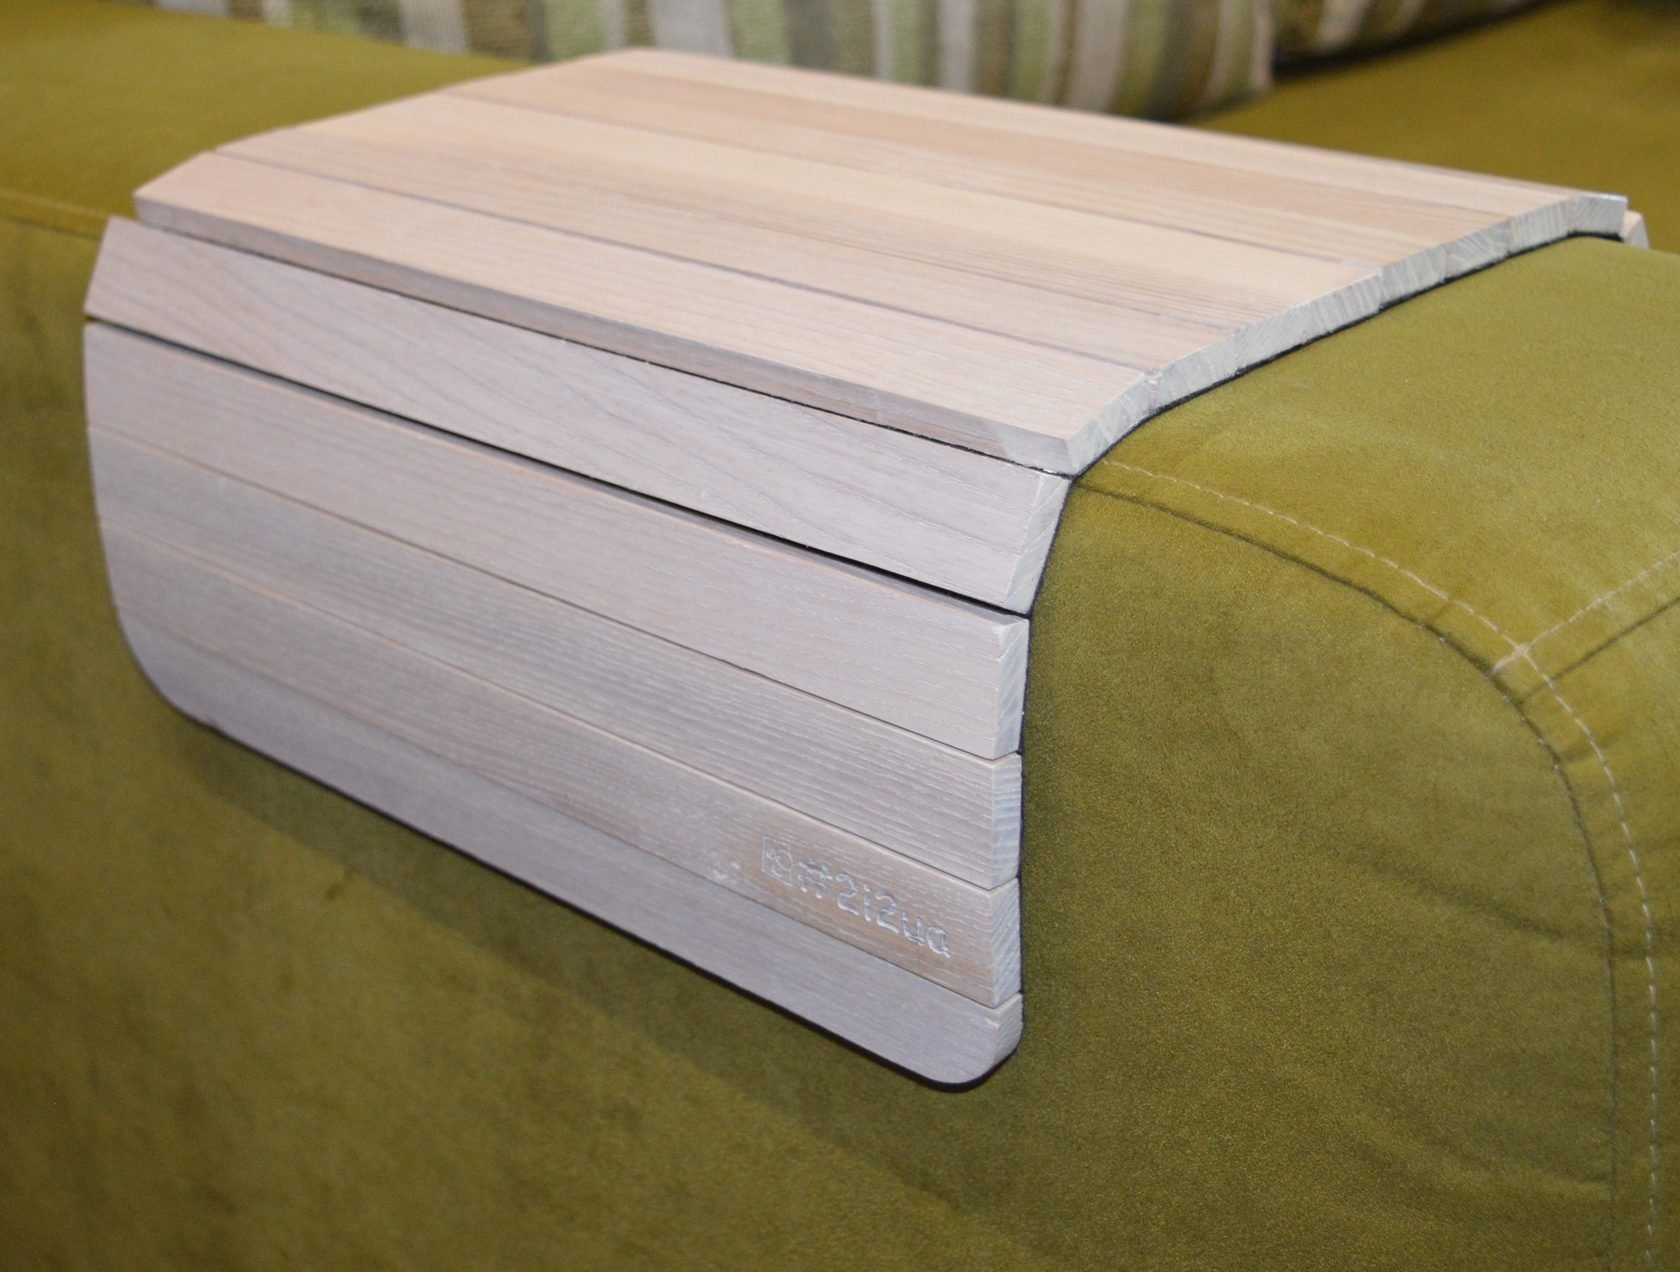 Деревянная накладка, столик, коврик на подлокотник дивана (белый) #2i2ua